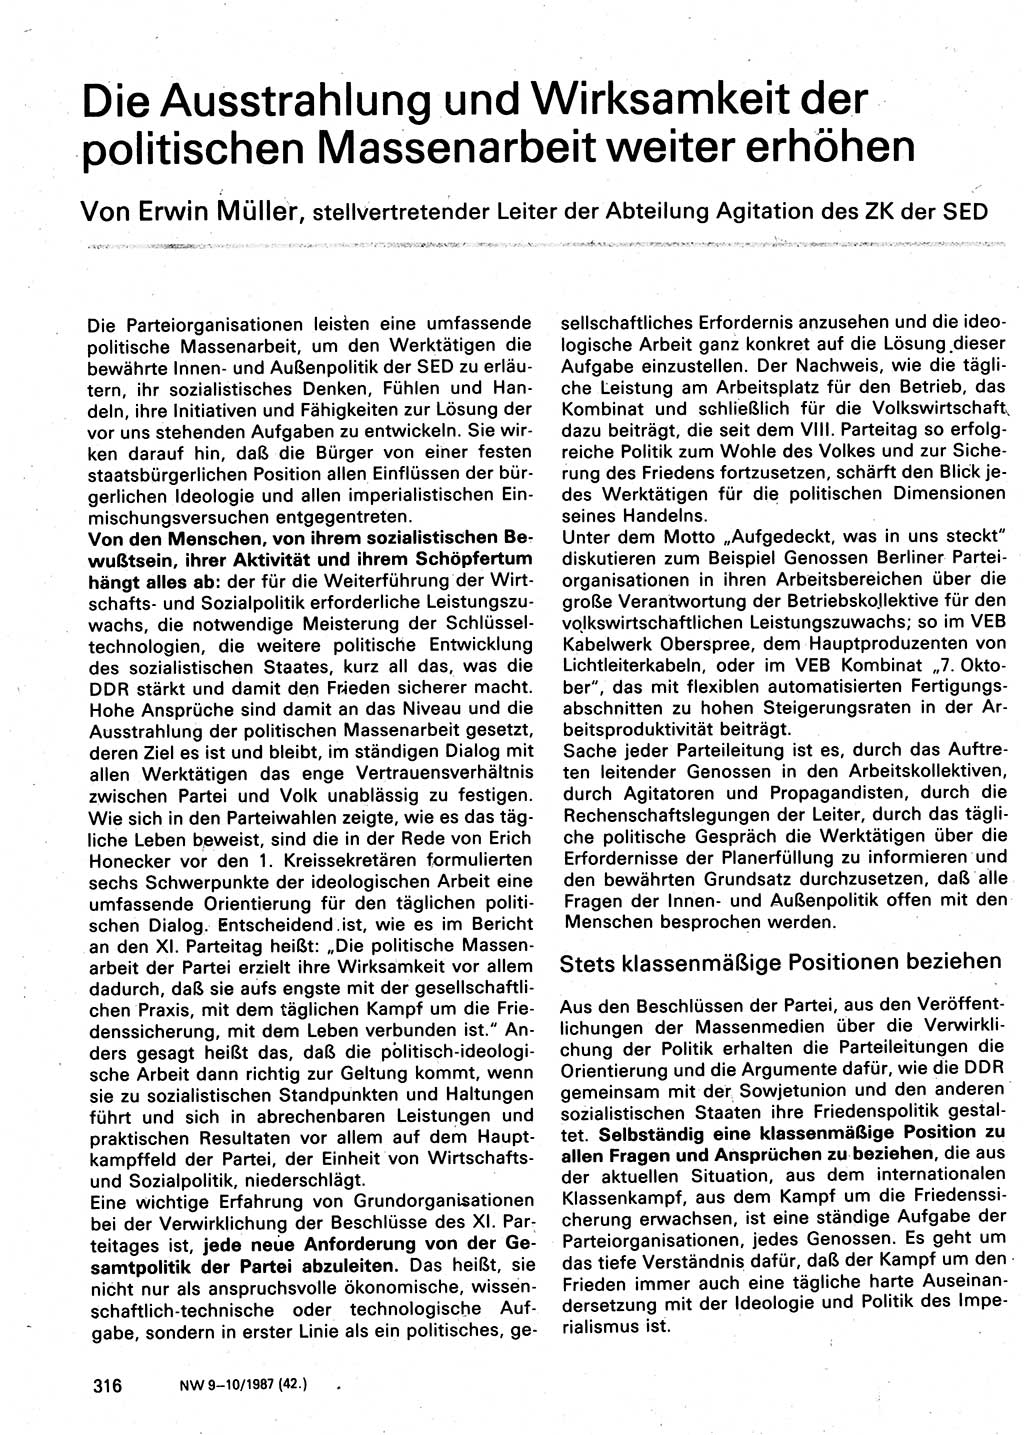 Neuer Weg (NW), Organ des Zentralkomitees (ZK) der SED (Sozialistische Einheitspartei Deutschlands) für Fragen des Parteilebens, 42. Jahrgang [Deutsche Demokratische Republik (DDR)] 1987, Seite 316 (NW ZK SED DDR 1987, S. 316)